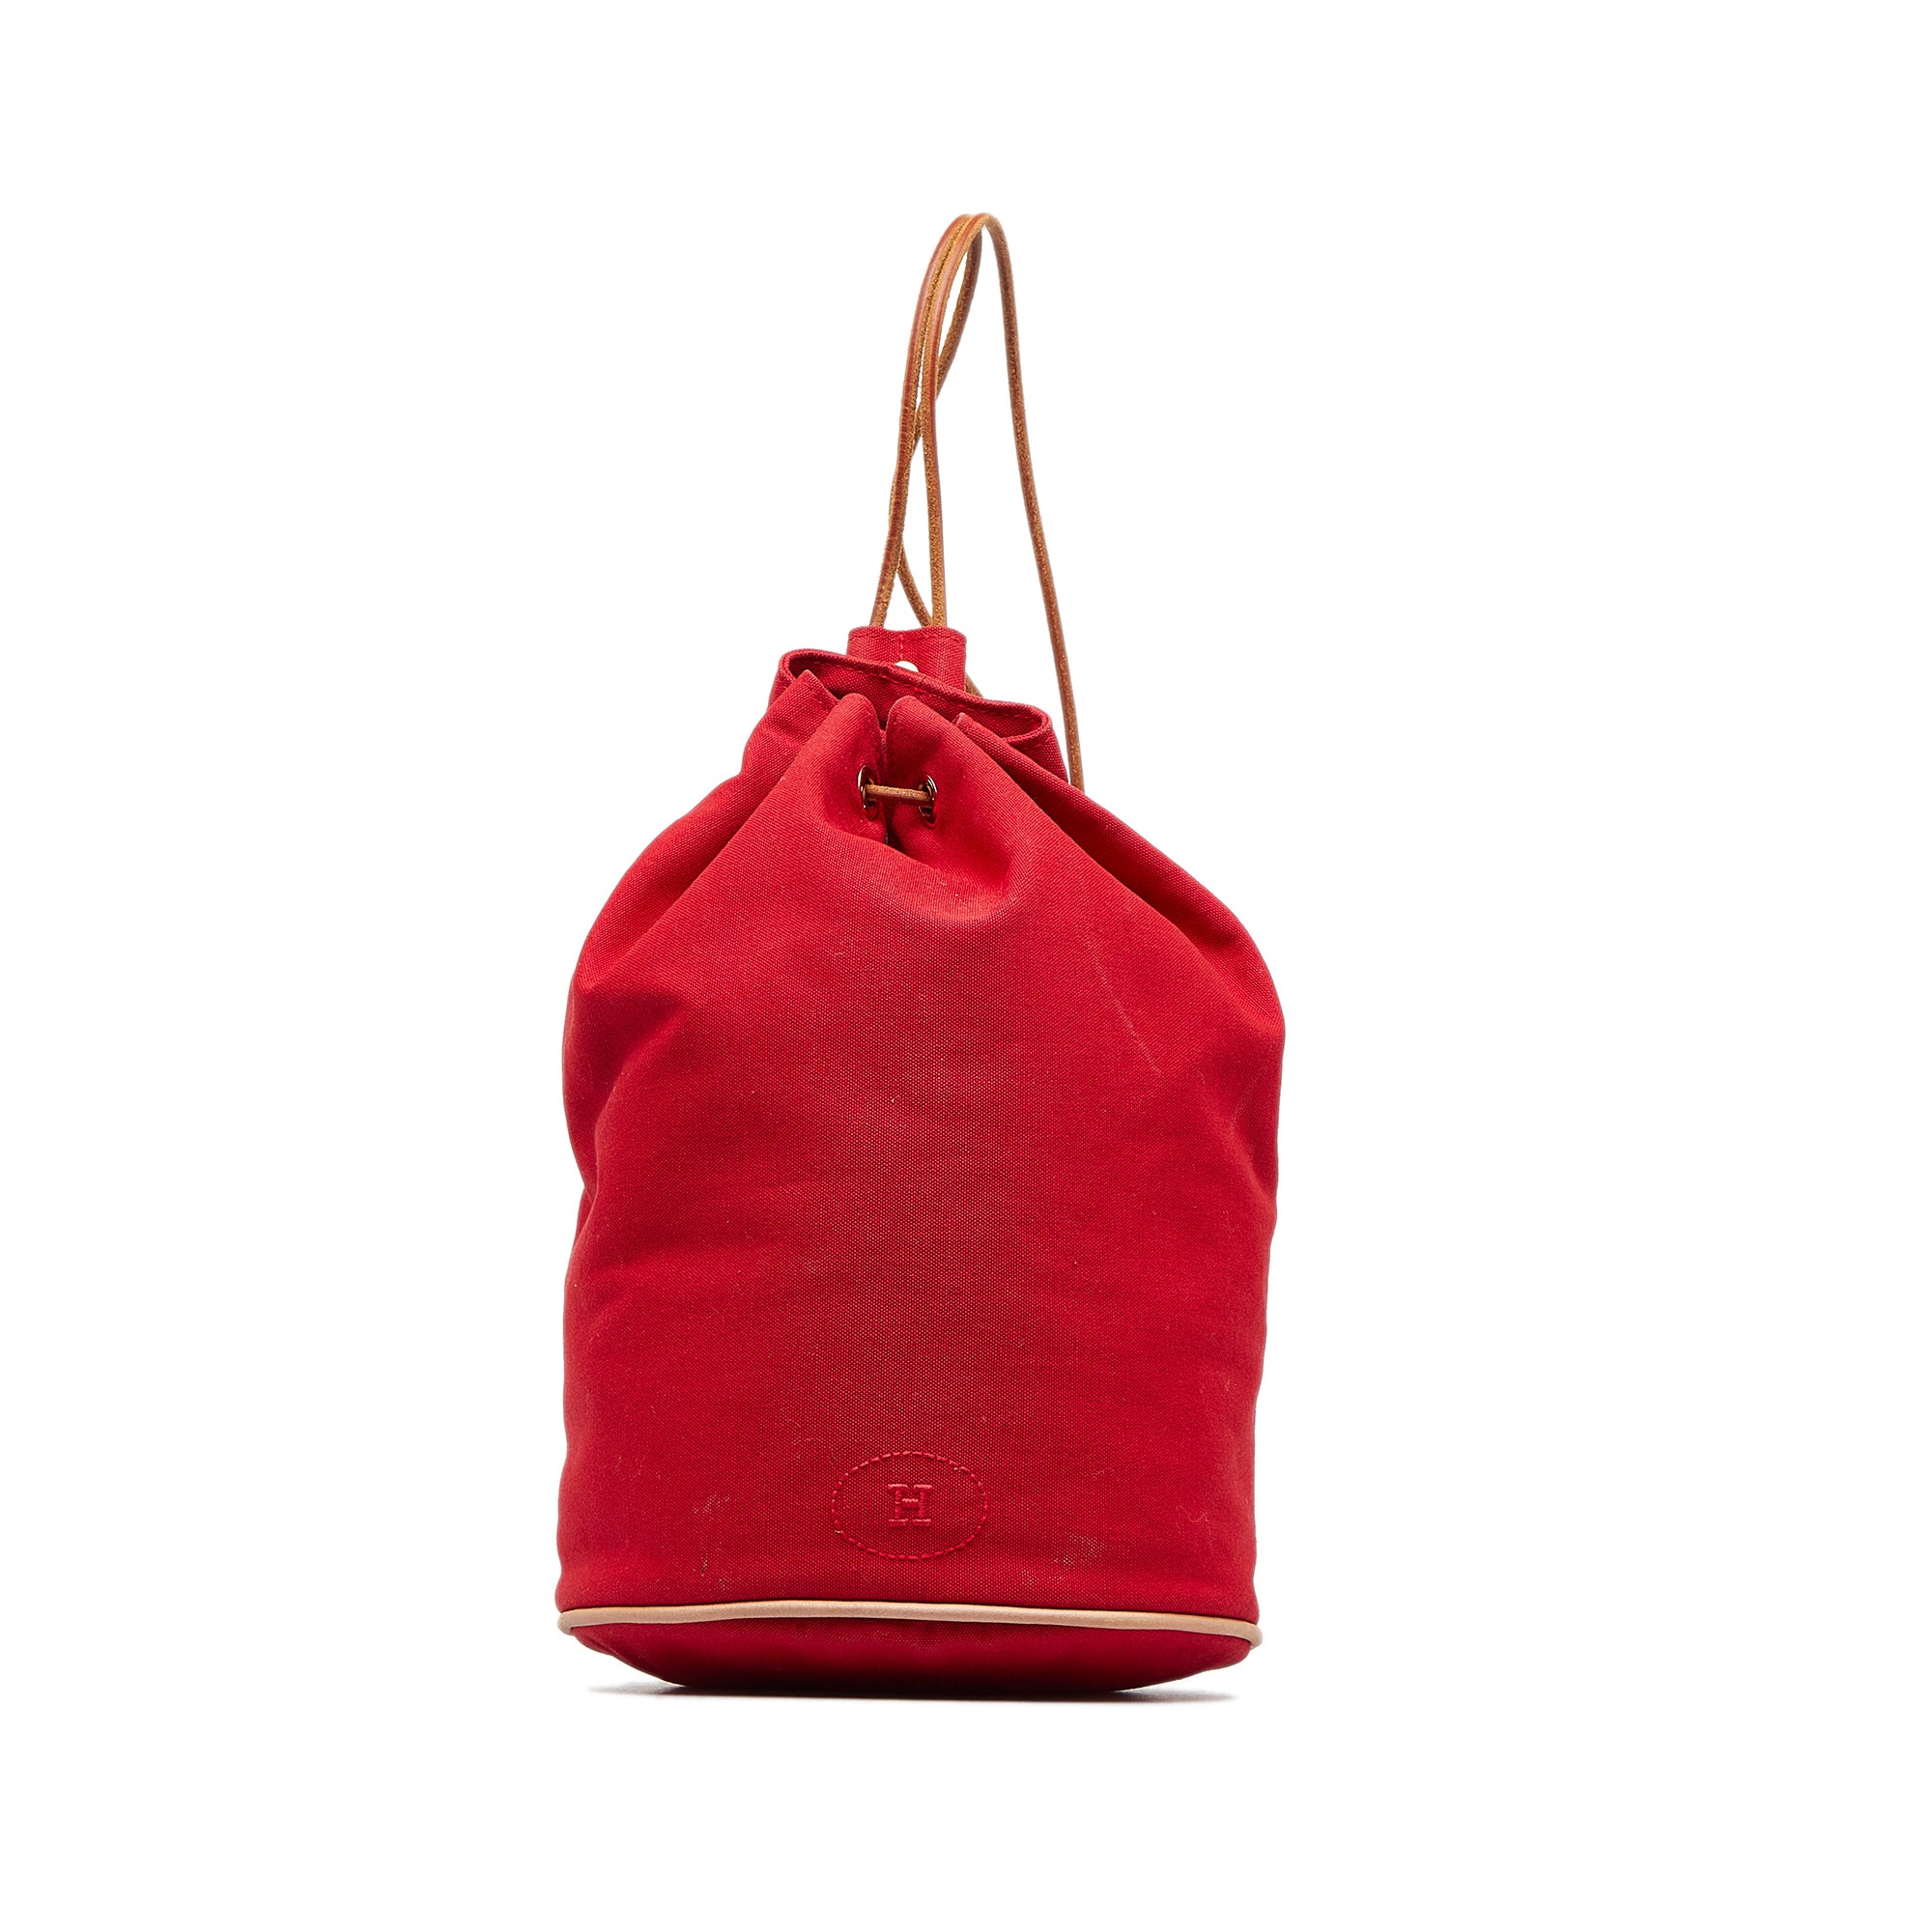 Red Hermes Polochon Mimile Backpack - Designer Revival